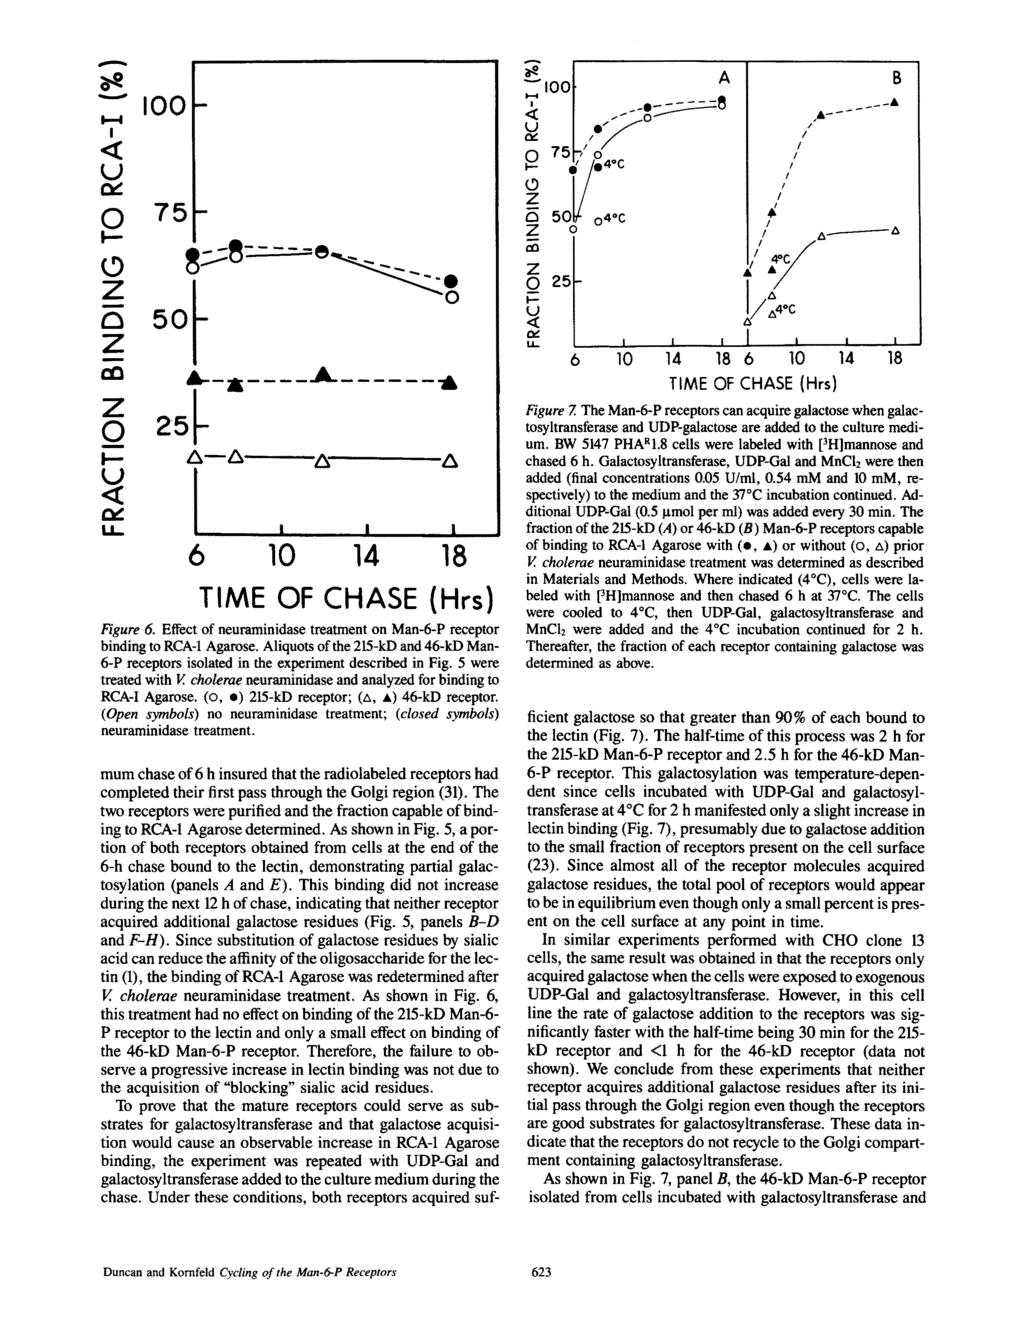 --- < U 00-0 75- z 5 A 1:O J,._ i,._ x... Q 25.- A--A- A" A < t U-,,,... 6 10 14 18 TME OF CHASE (Hrs) Figure 6. Effect of neuraminidase treatment on Man-6-P receptor binding to RCA-1 Agarose.